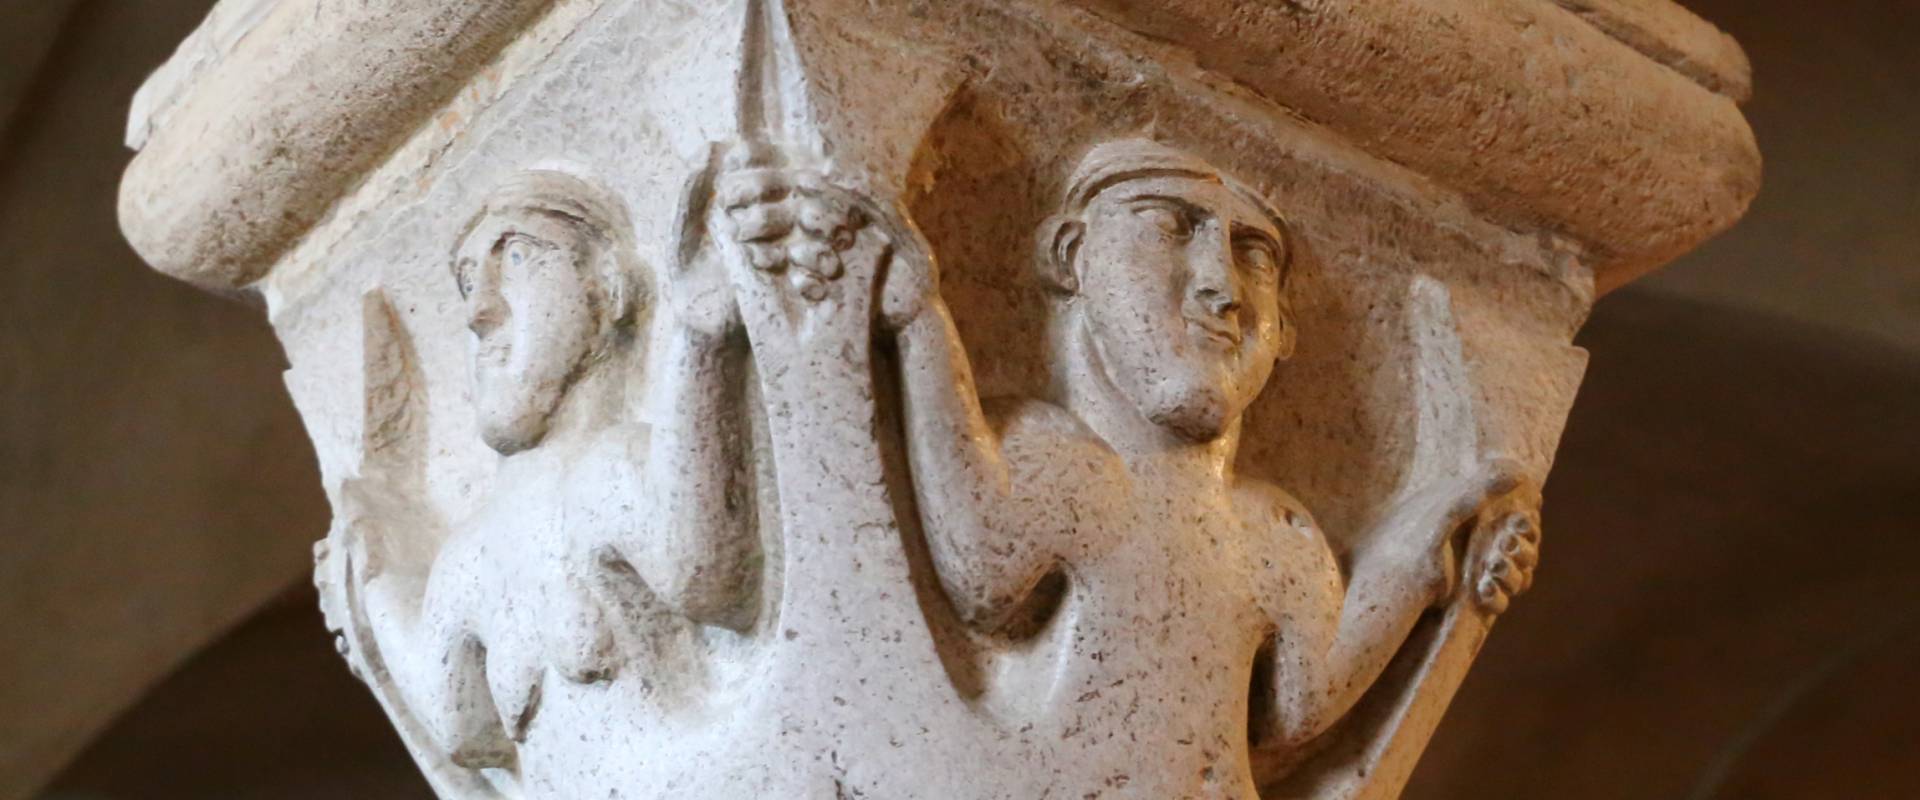 Duomo di modena, interno, capitello della cripta con sirena bicaudata maschile e femminile, scuola lombarda del 1099-1100 foto di Sailko